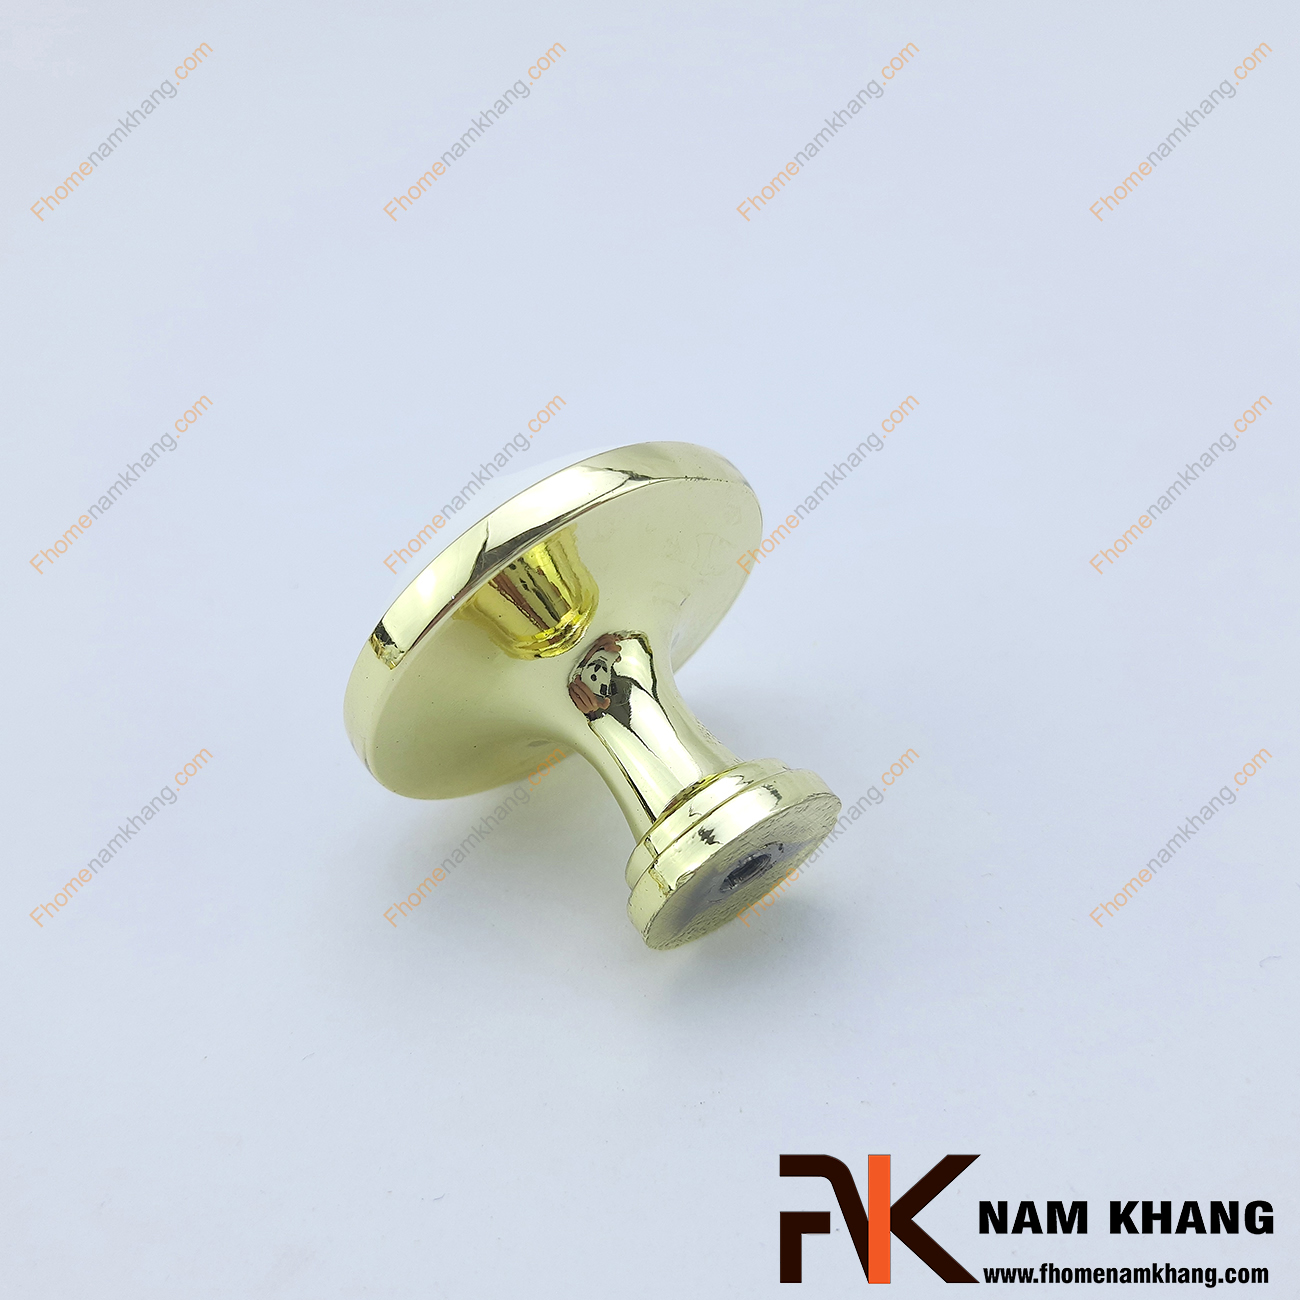 Núm cửa tủ tròn bằng sứ trắng viền vàng NK201-V có thiết kế khá đơn giản từ hợp kim mạ vàng bọc quanh sứ trắng bóng cao cấp. Khá đơn giản nhưng lại toát lên vẻ ngoài tinh tế và rất sang trọng .